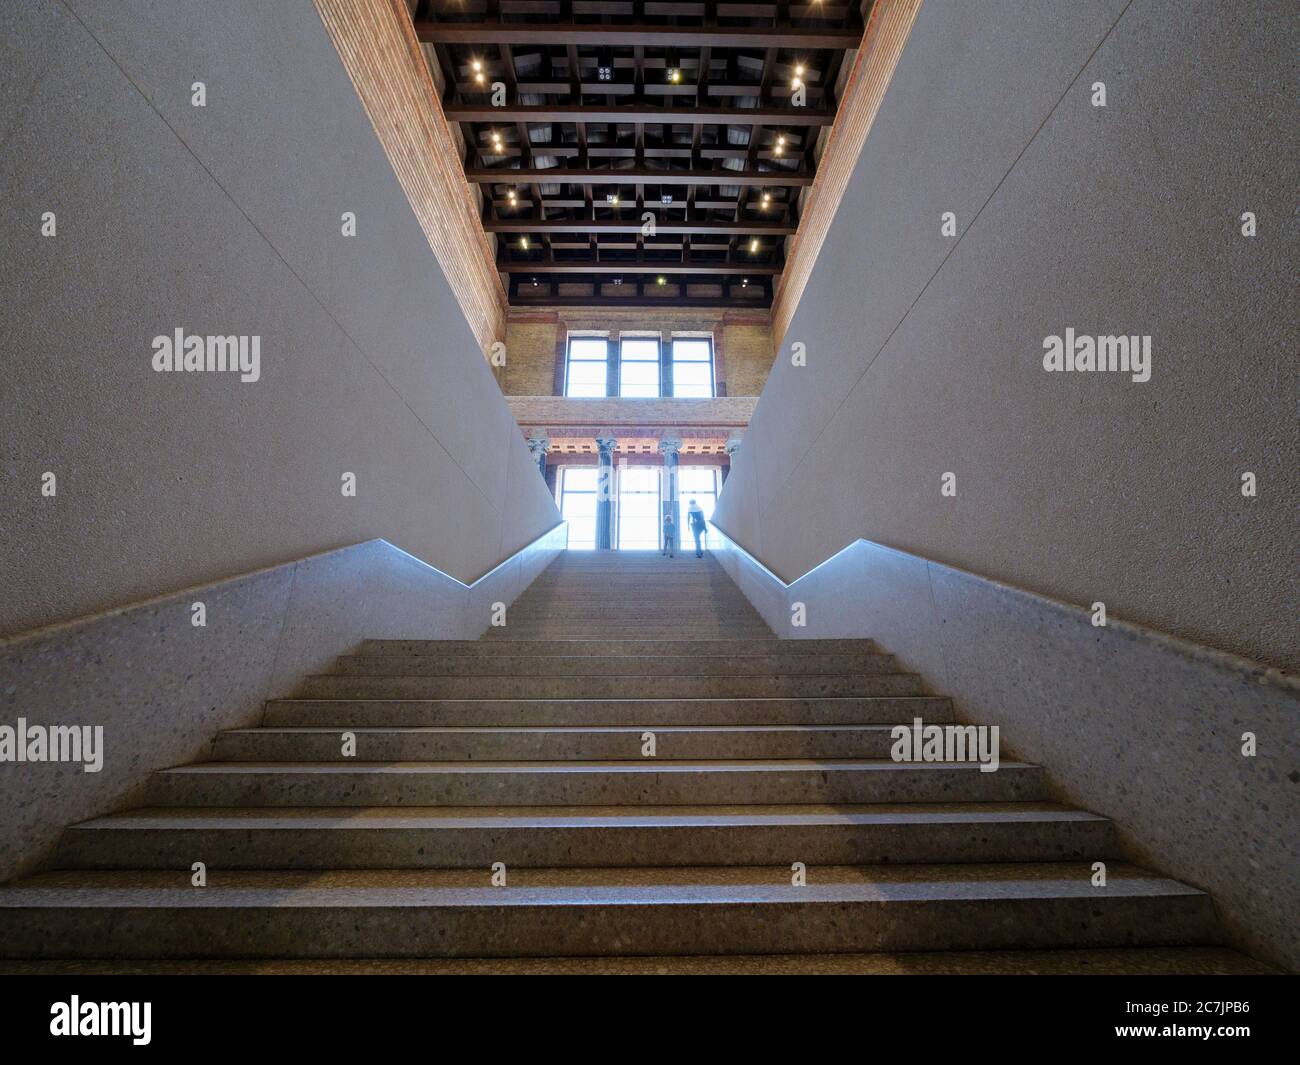 Musée Neues, intérieur, escalier, escalier, Ile aux Musées, Berlin, Allemagne Banque D'Images